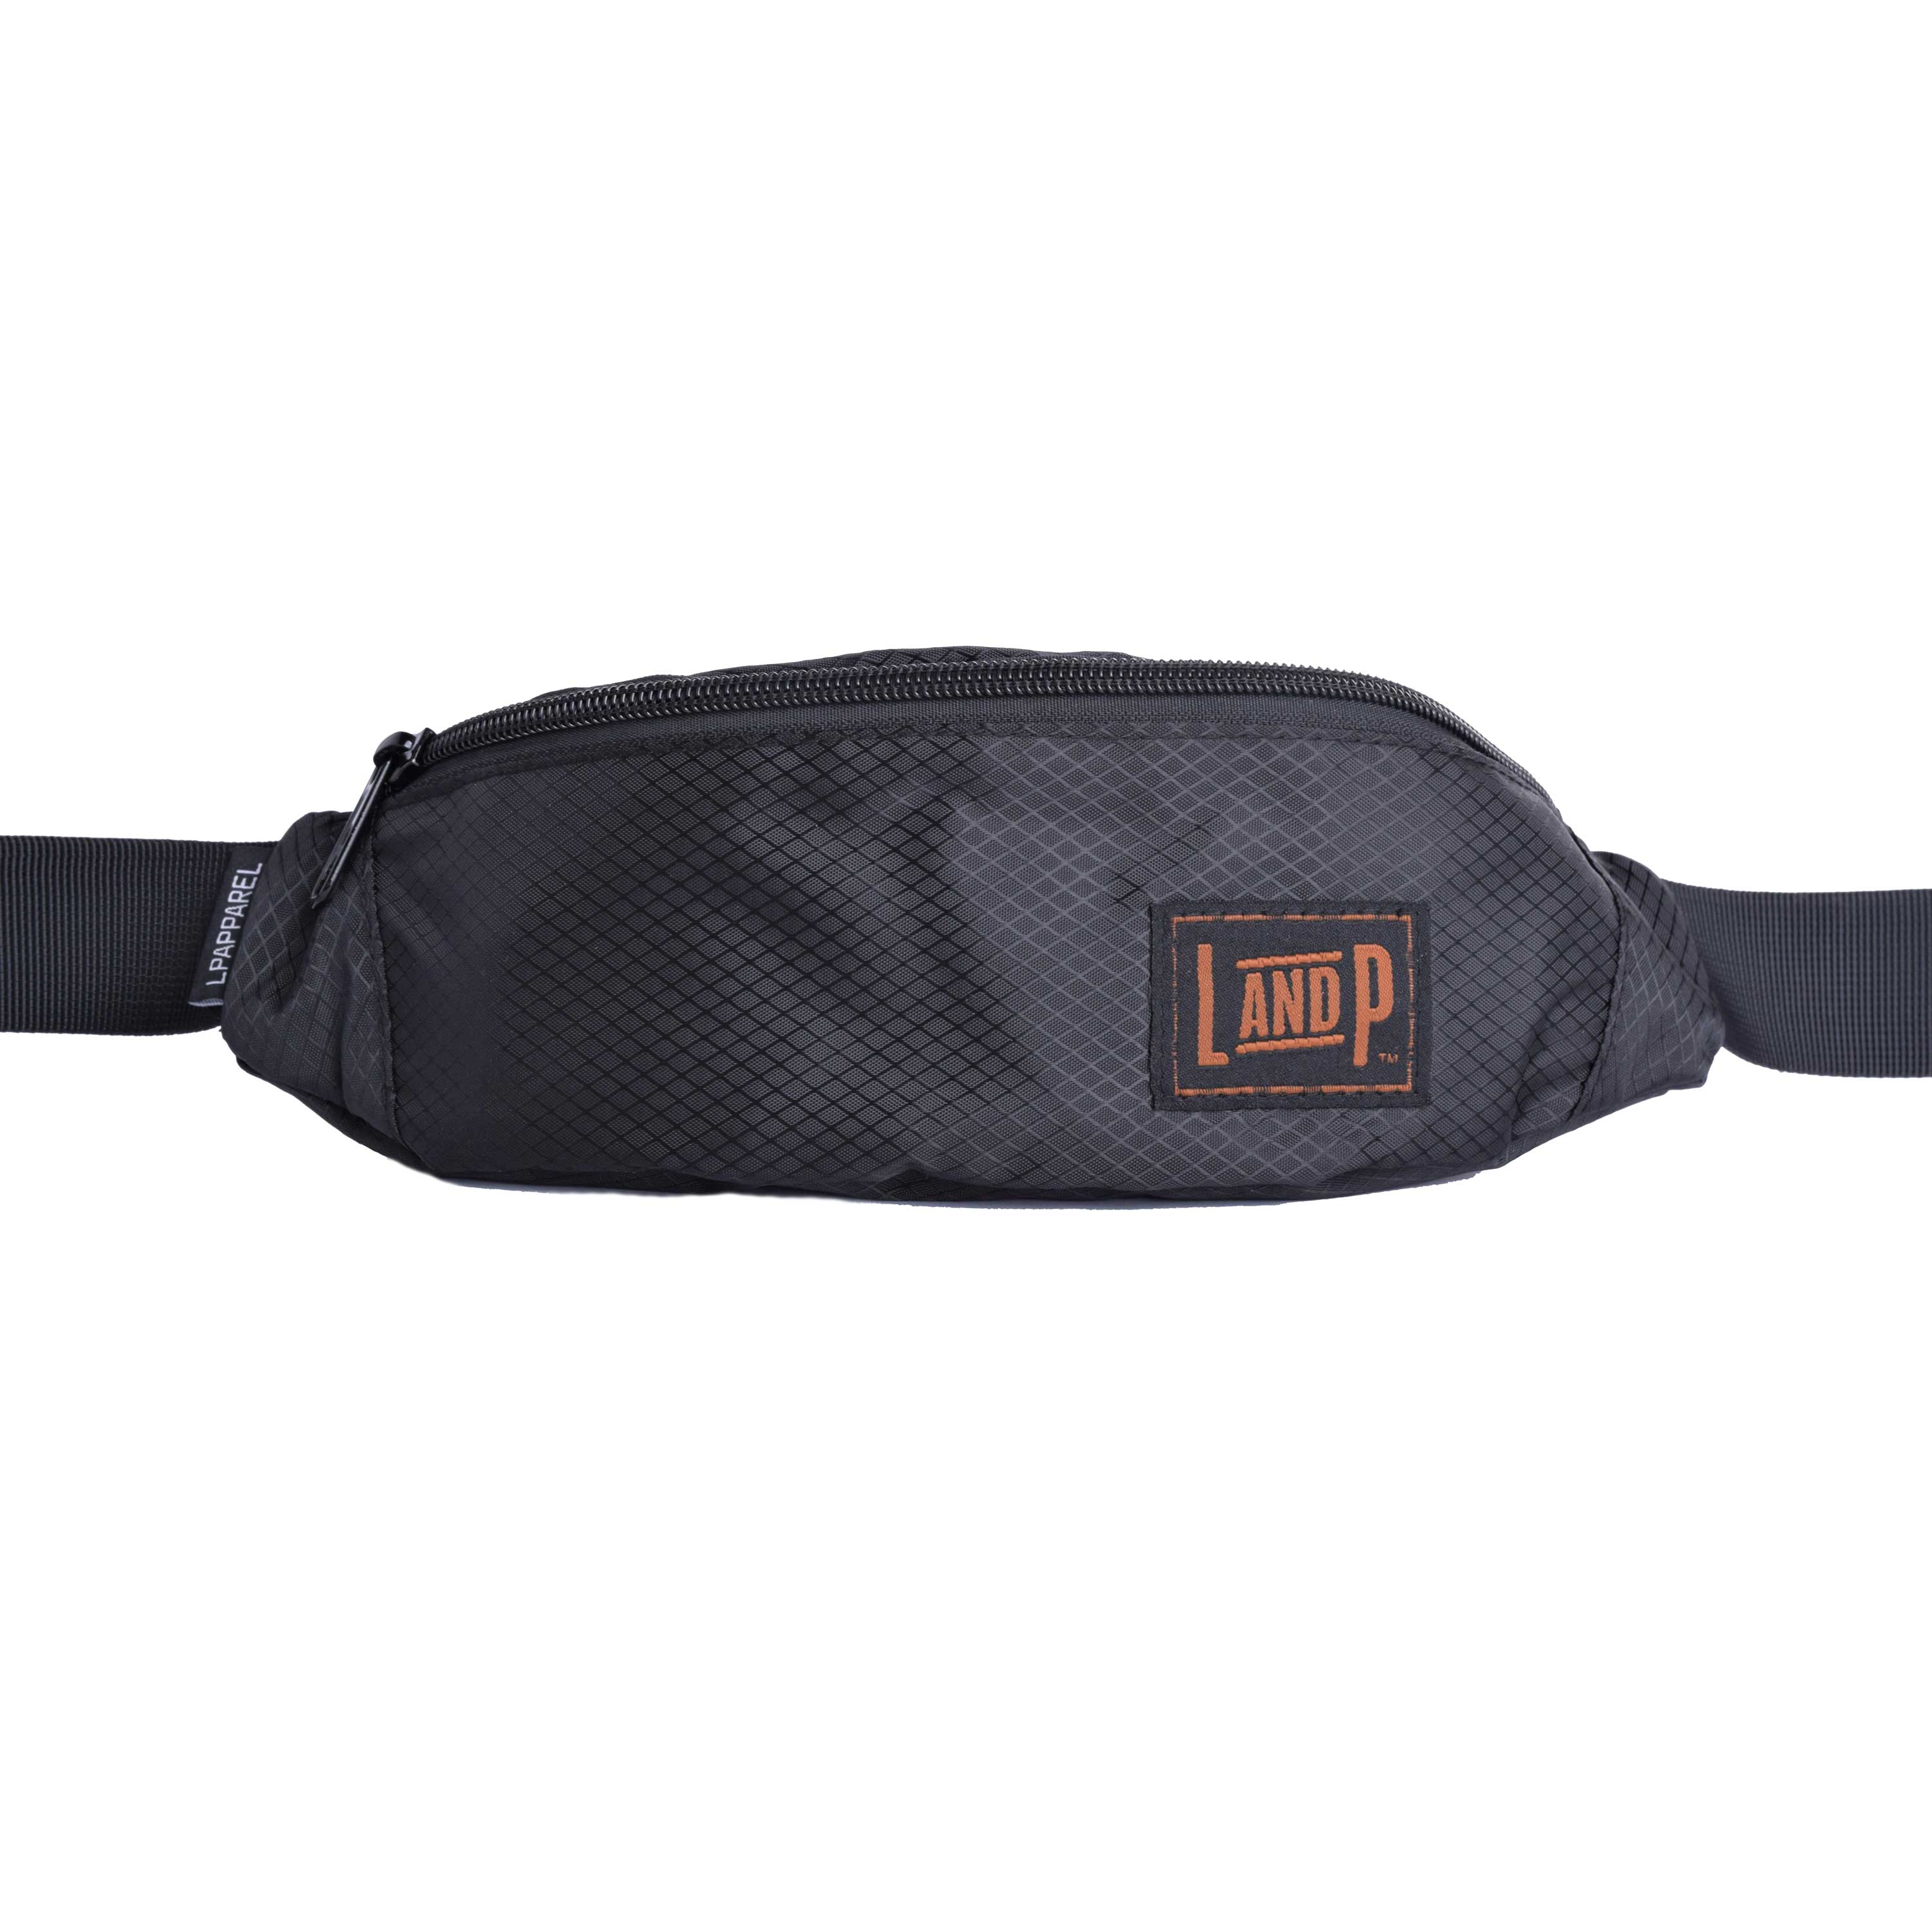 Adjustable belt bag (Fanny bag) – LP Apparel